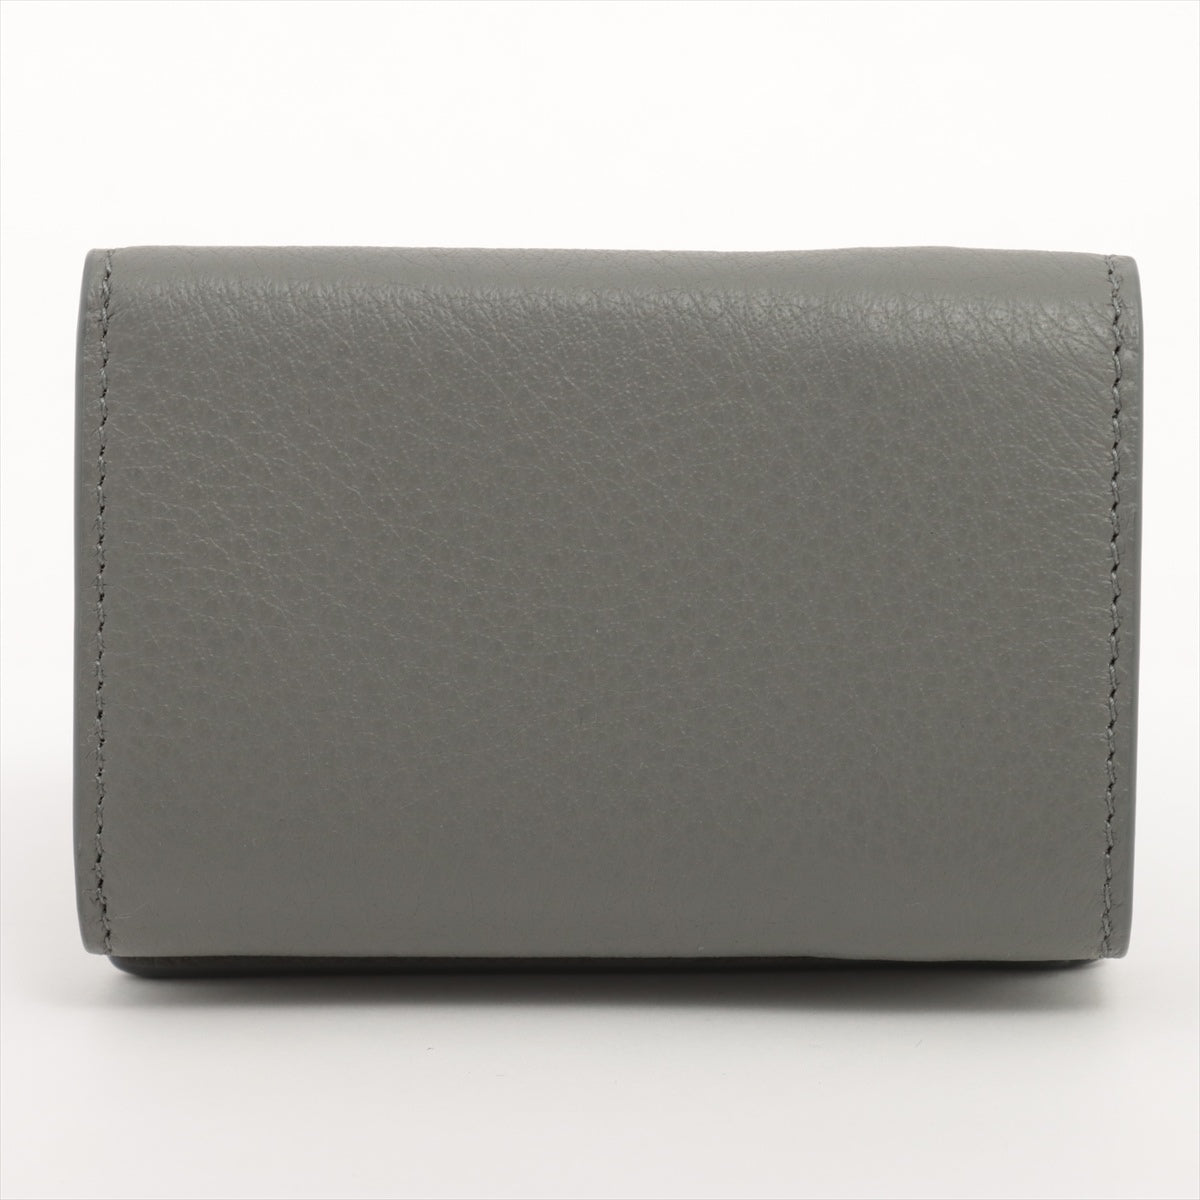 Balenciaga Papier Mini 391446 Leather Compact Wallet Grey